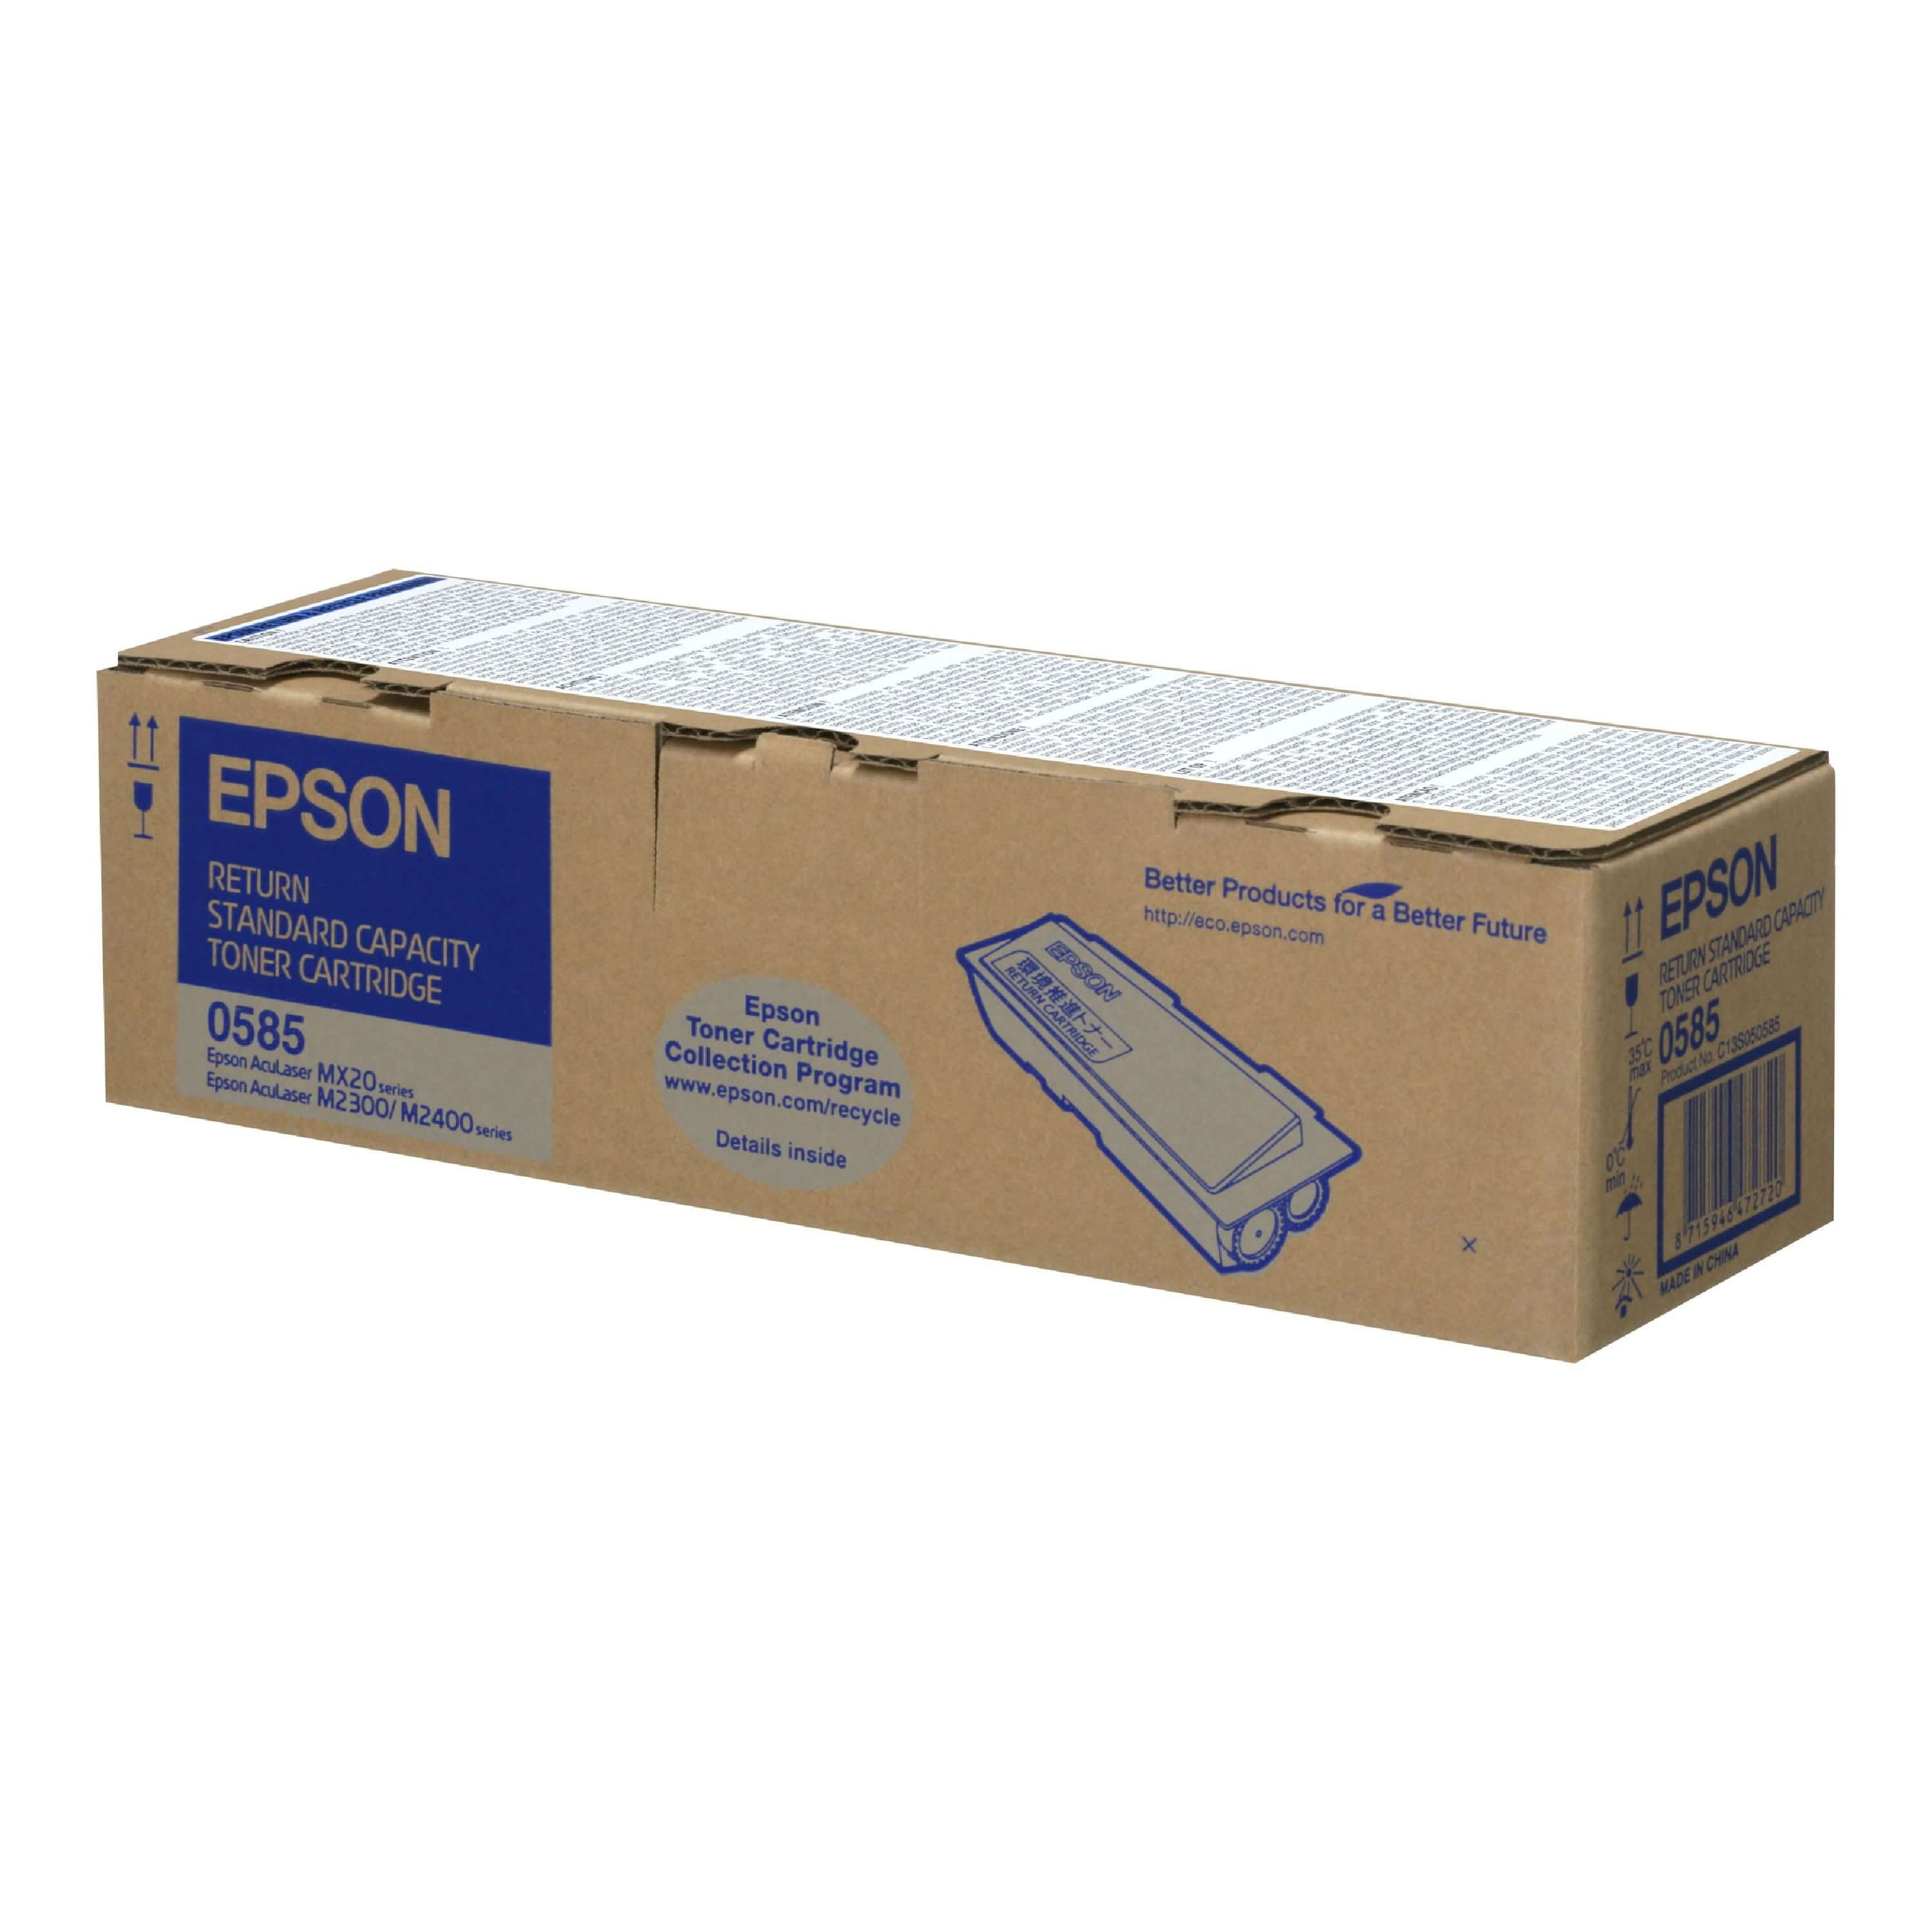 Original Toner Epson Aculaser MX 20 DTN (C13S050585 / 0585)